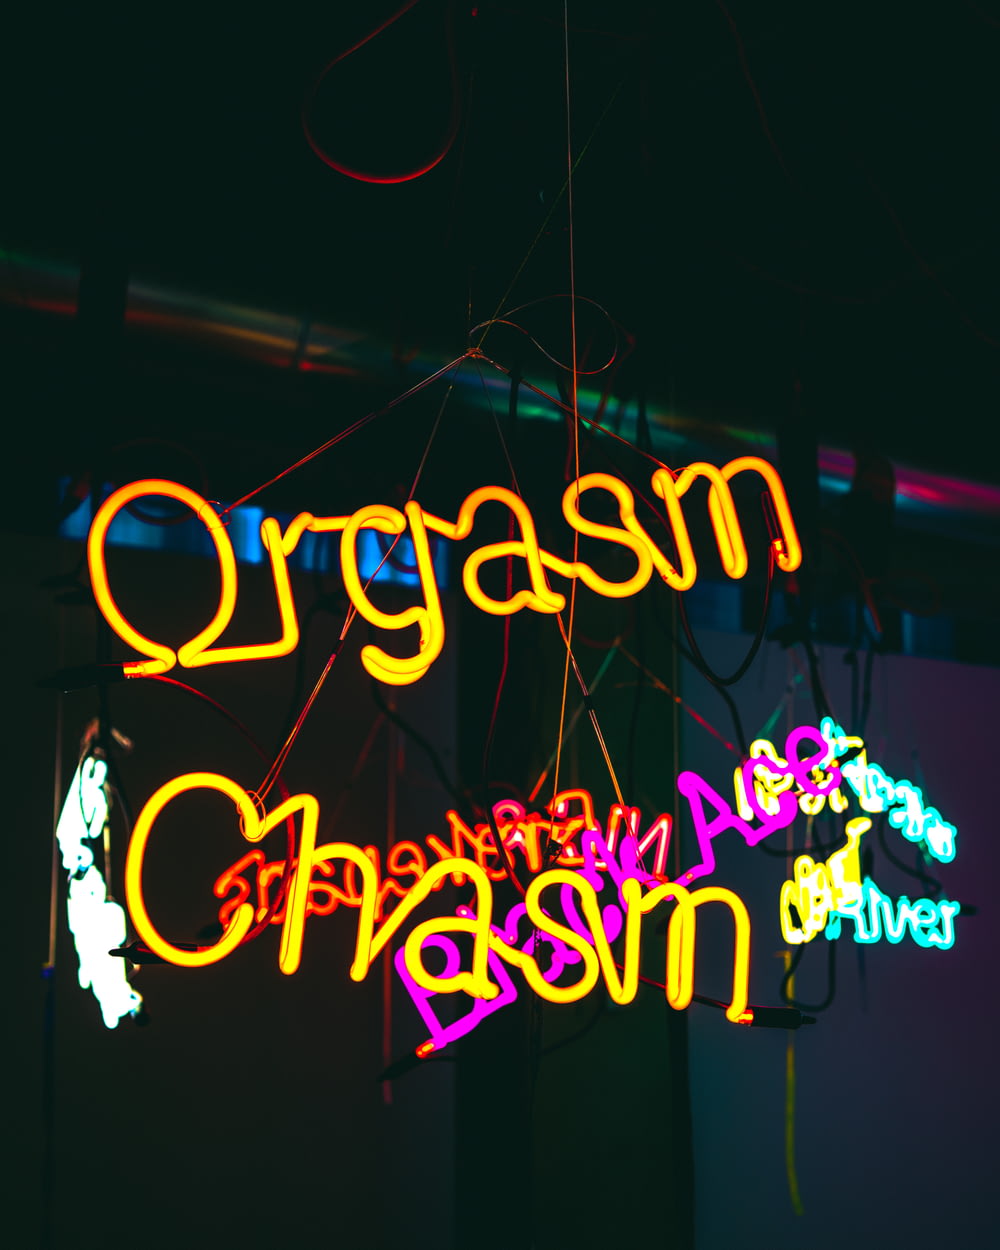 Segnaletica al neon Orgasm Chasm